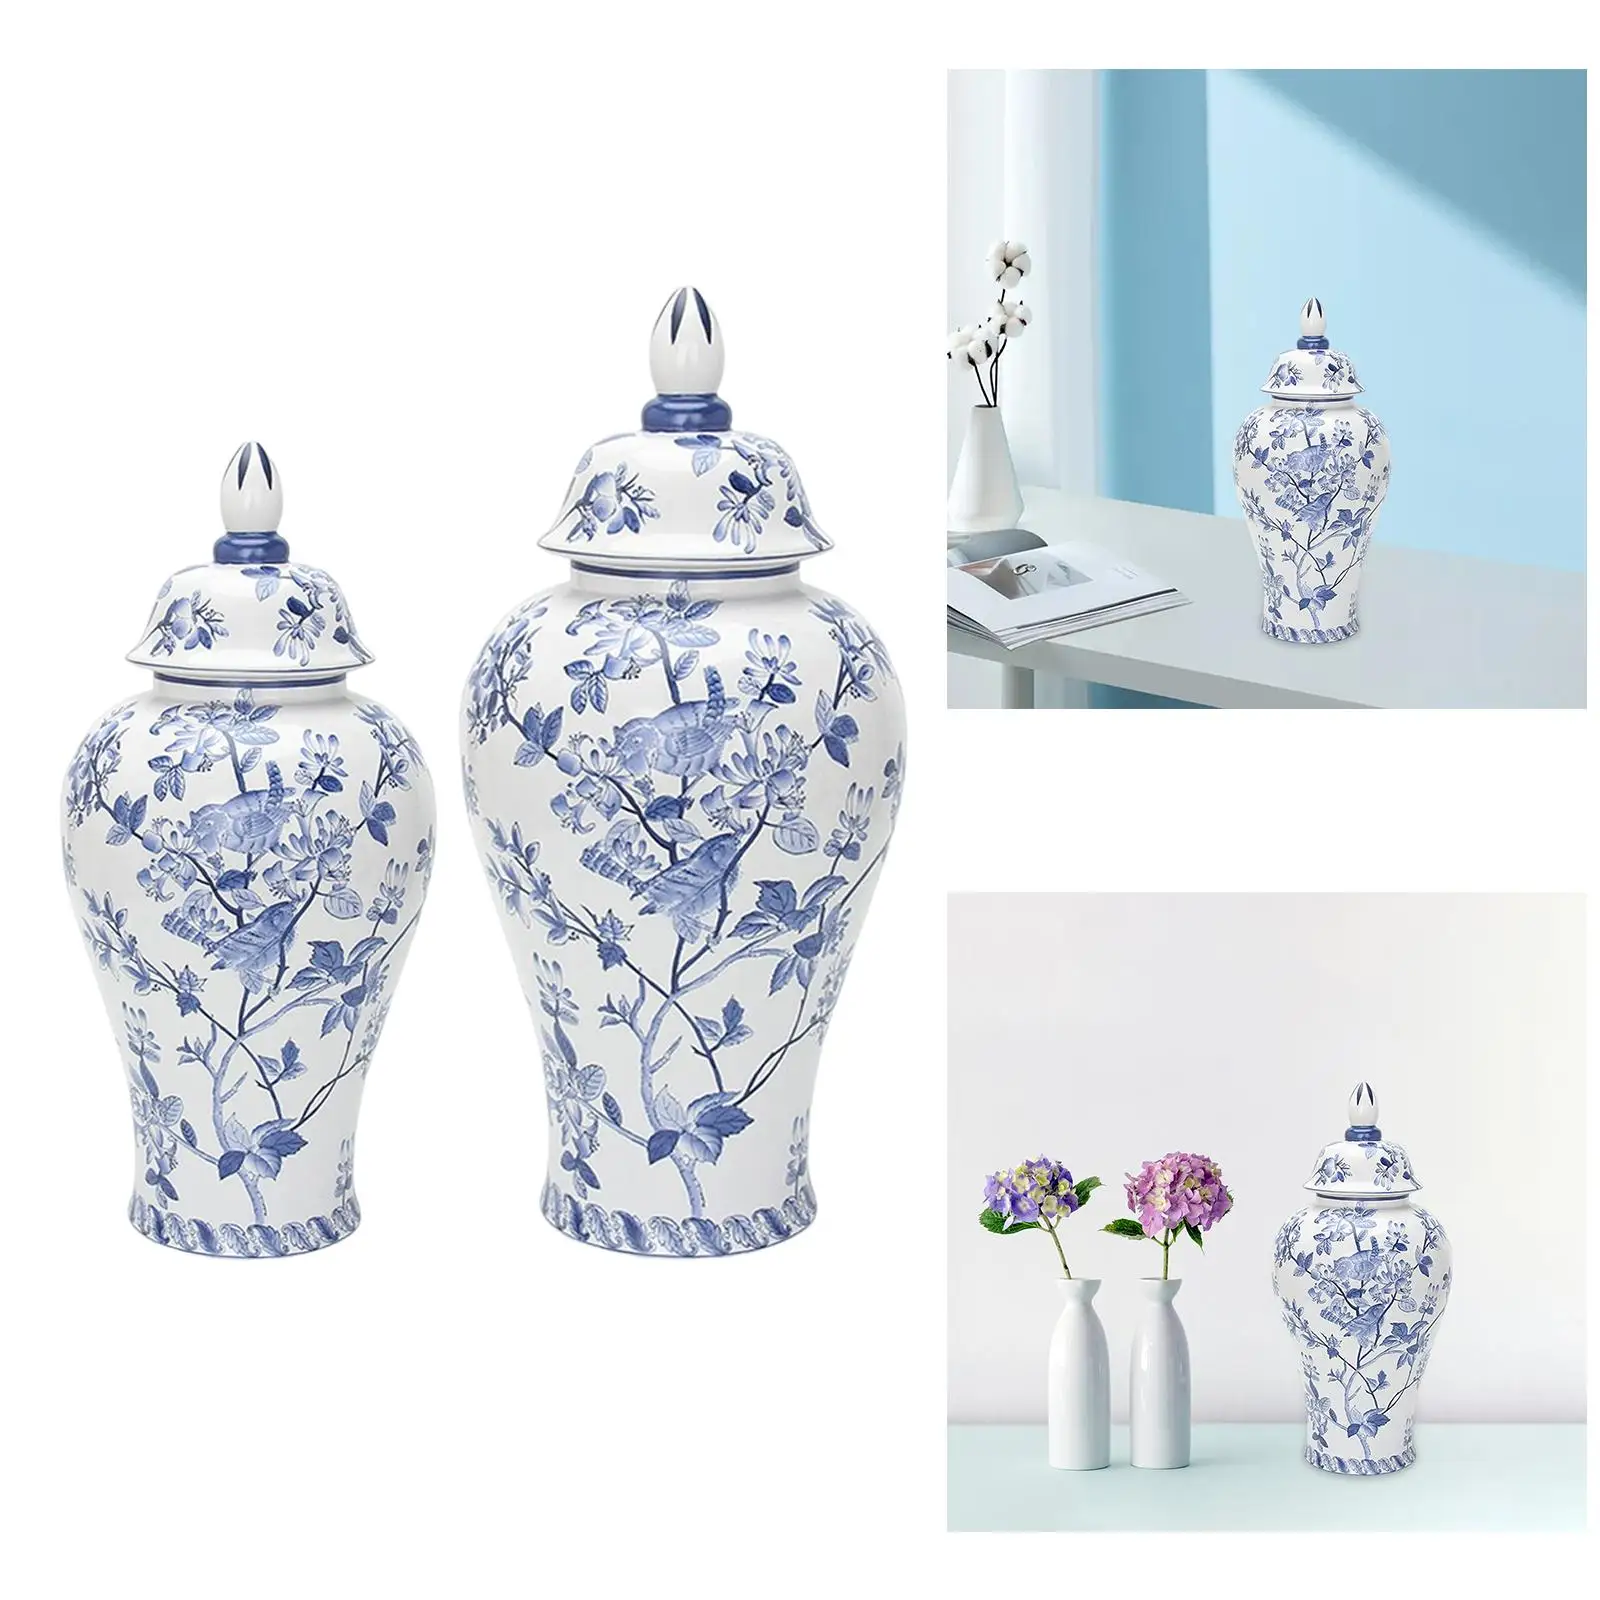 Chinese Traditional Porcelain Ginger Jar Ceramic Flower Vase for Bedroom